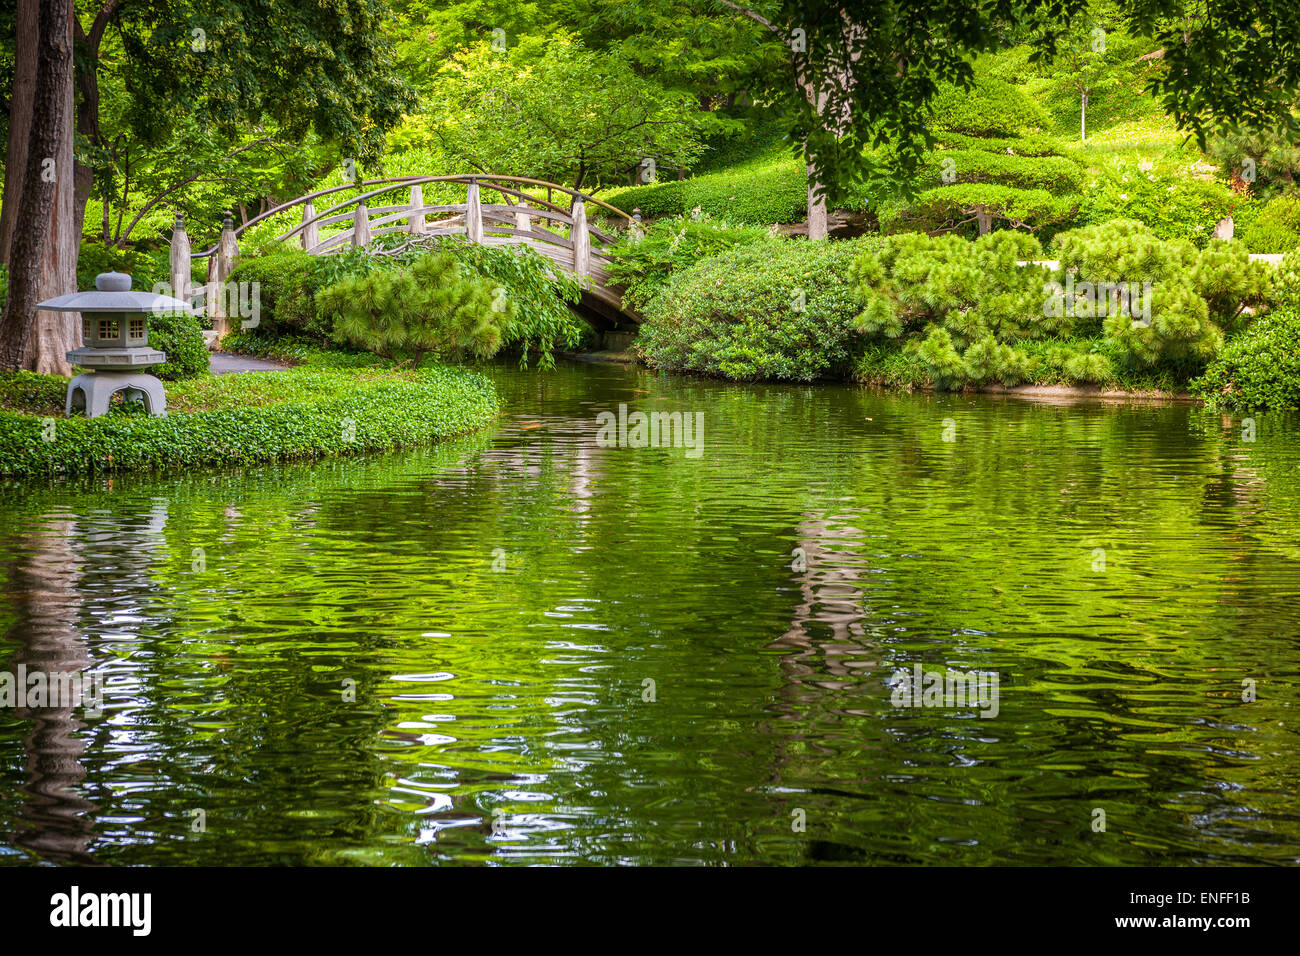 Silenziosa e tranquilla natura outdoor scena in giapponese Giardini Botanici a Fort Worth, Texas, Stati Uniti d'America. Foto Stock